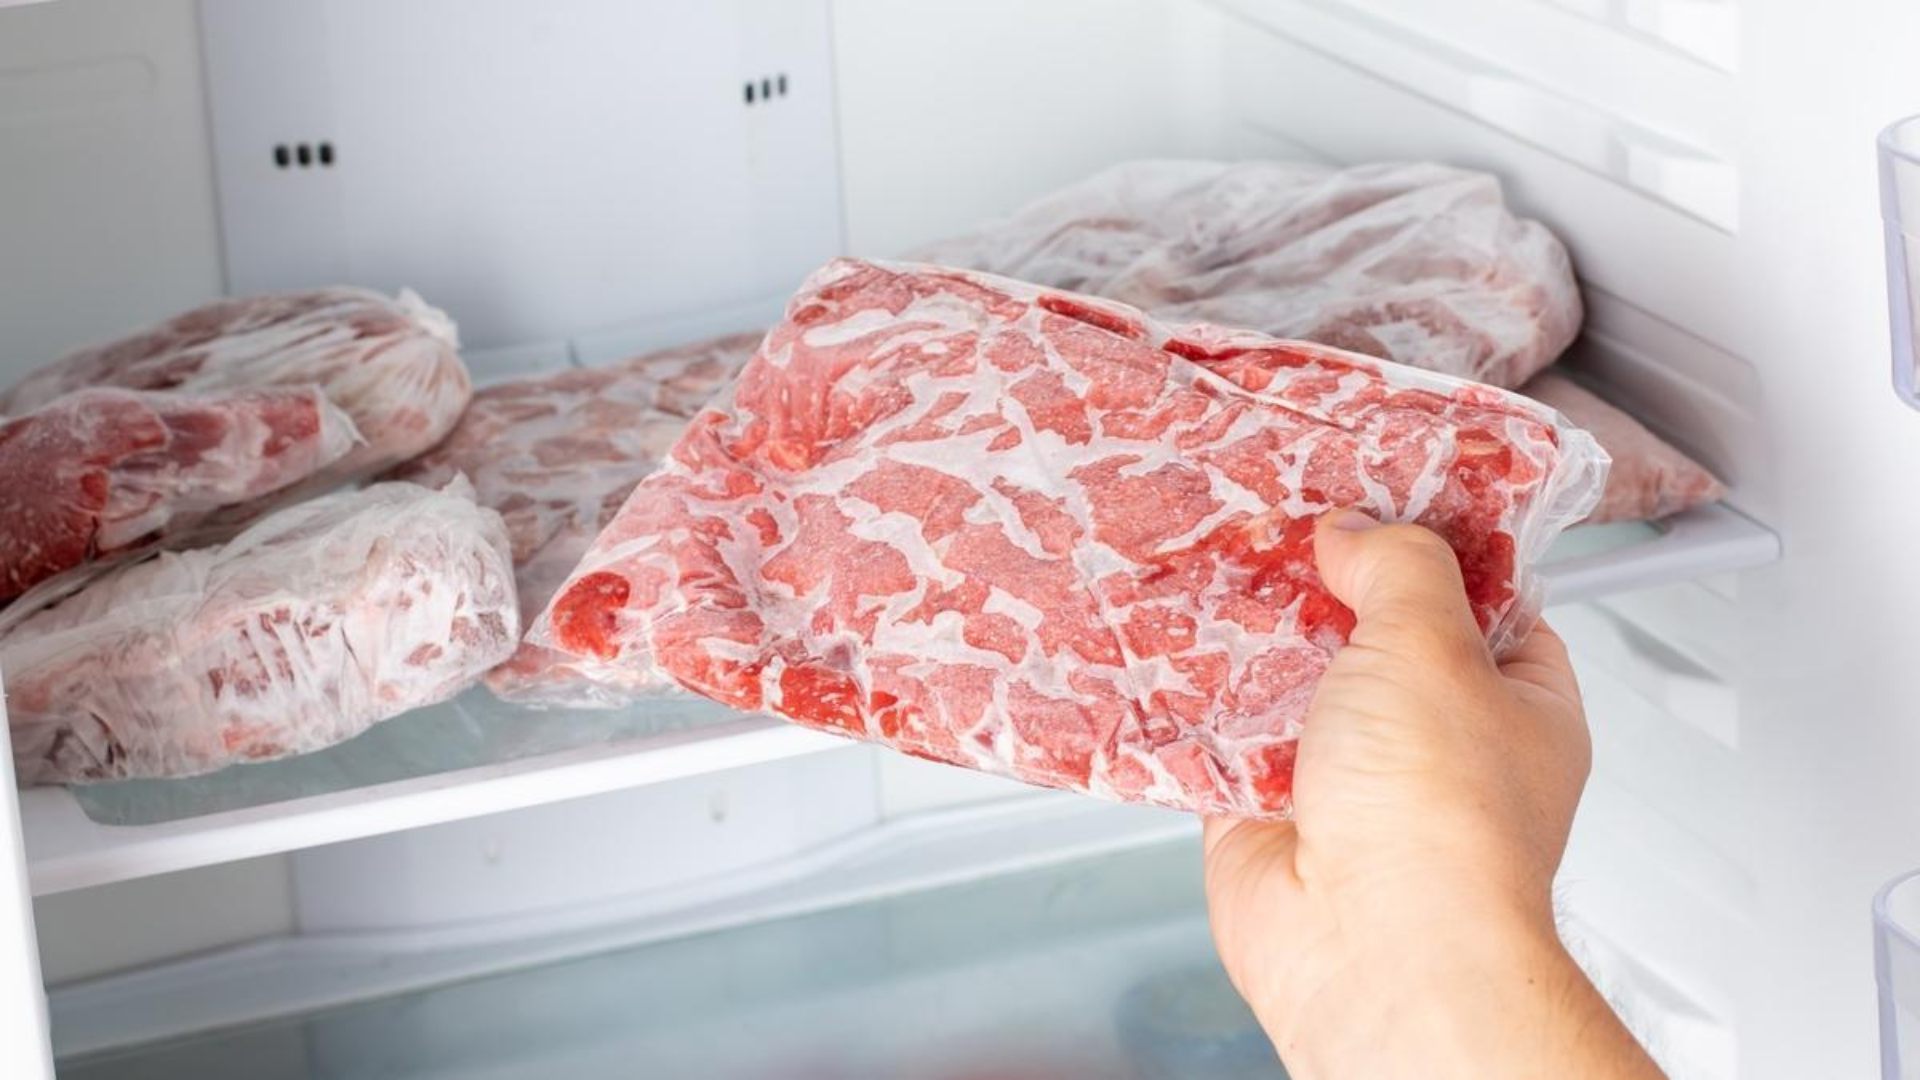 Descongelar carne